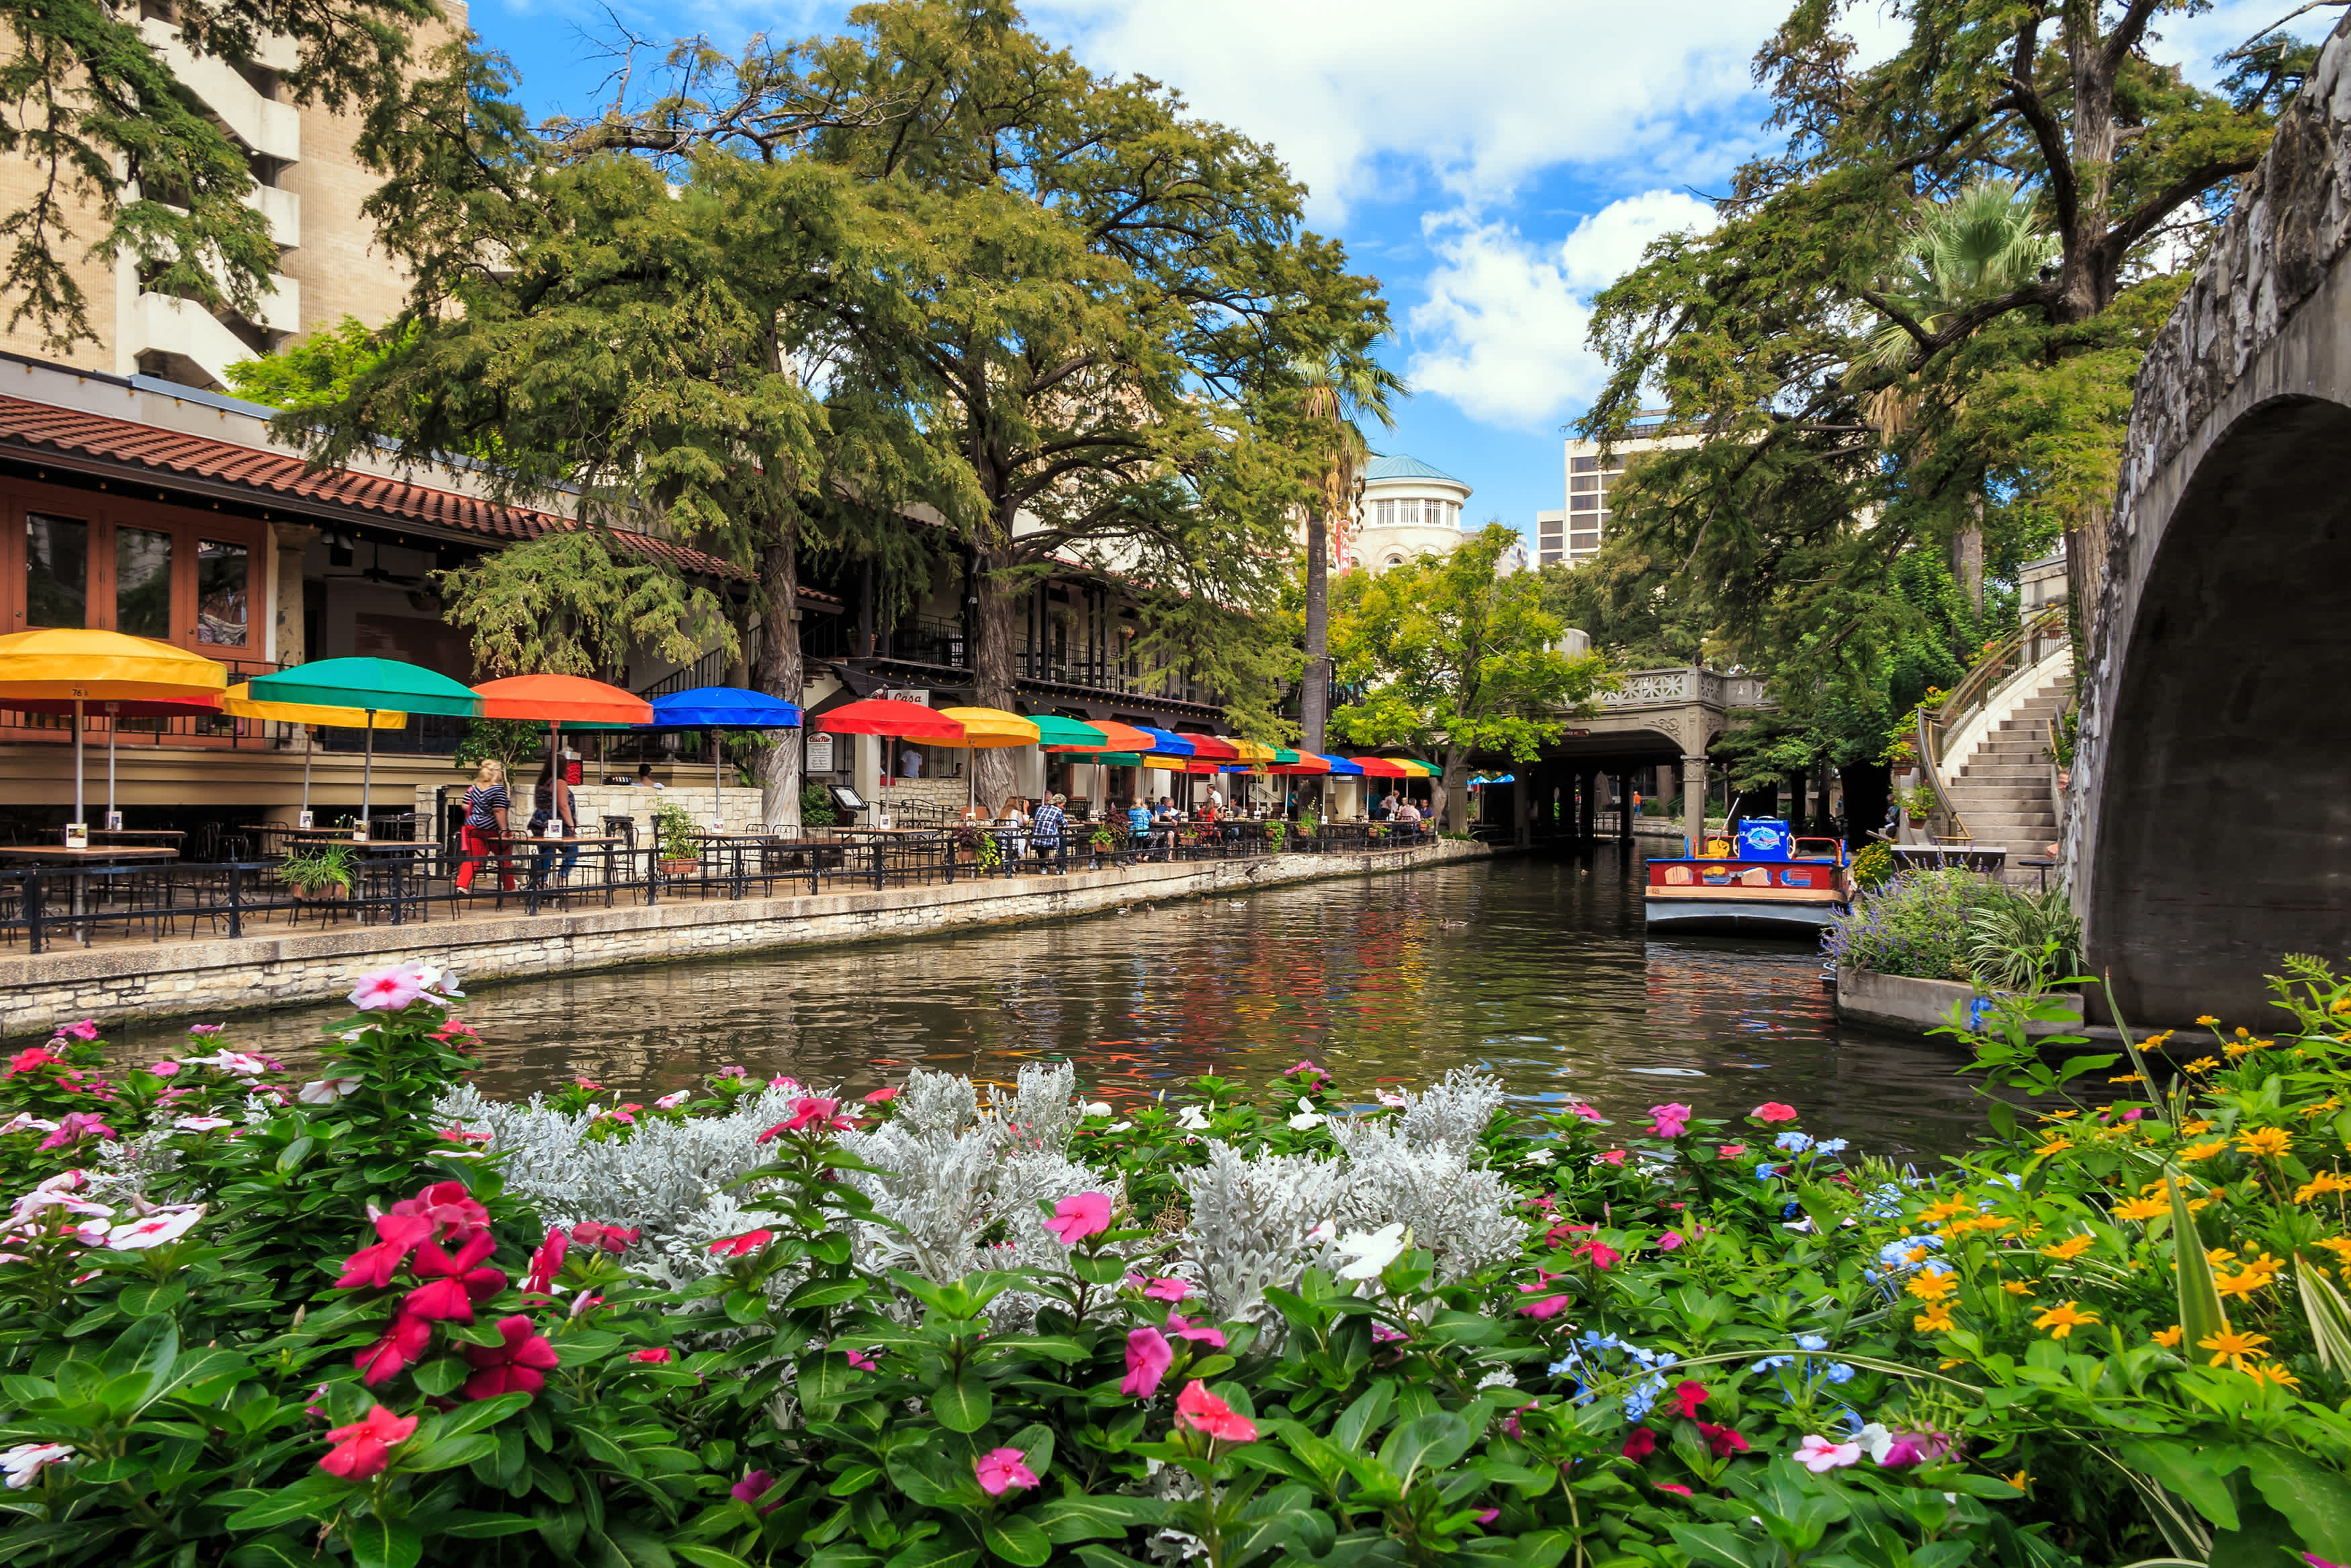 Fleurs aménagés le long d'un canal à San Antonio, avec des tables et des parasols colorés le long de la rive.